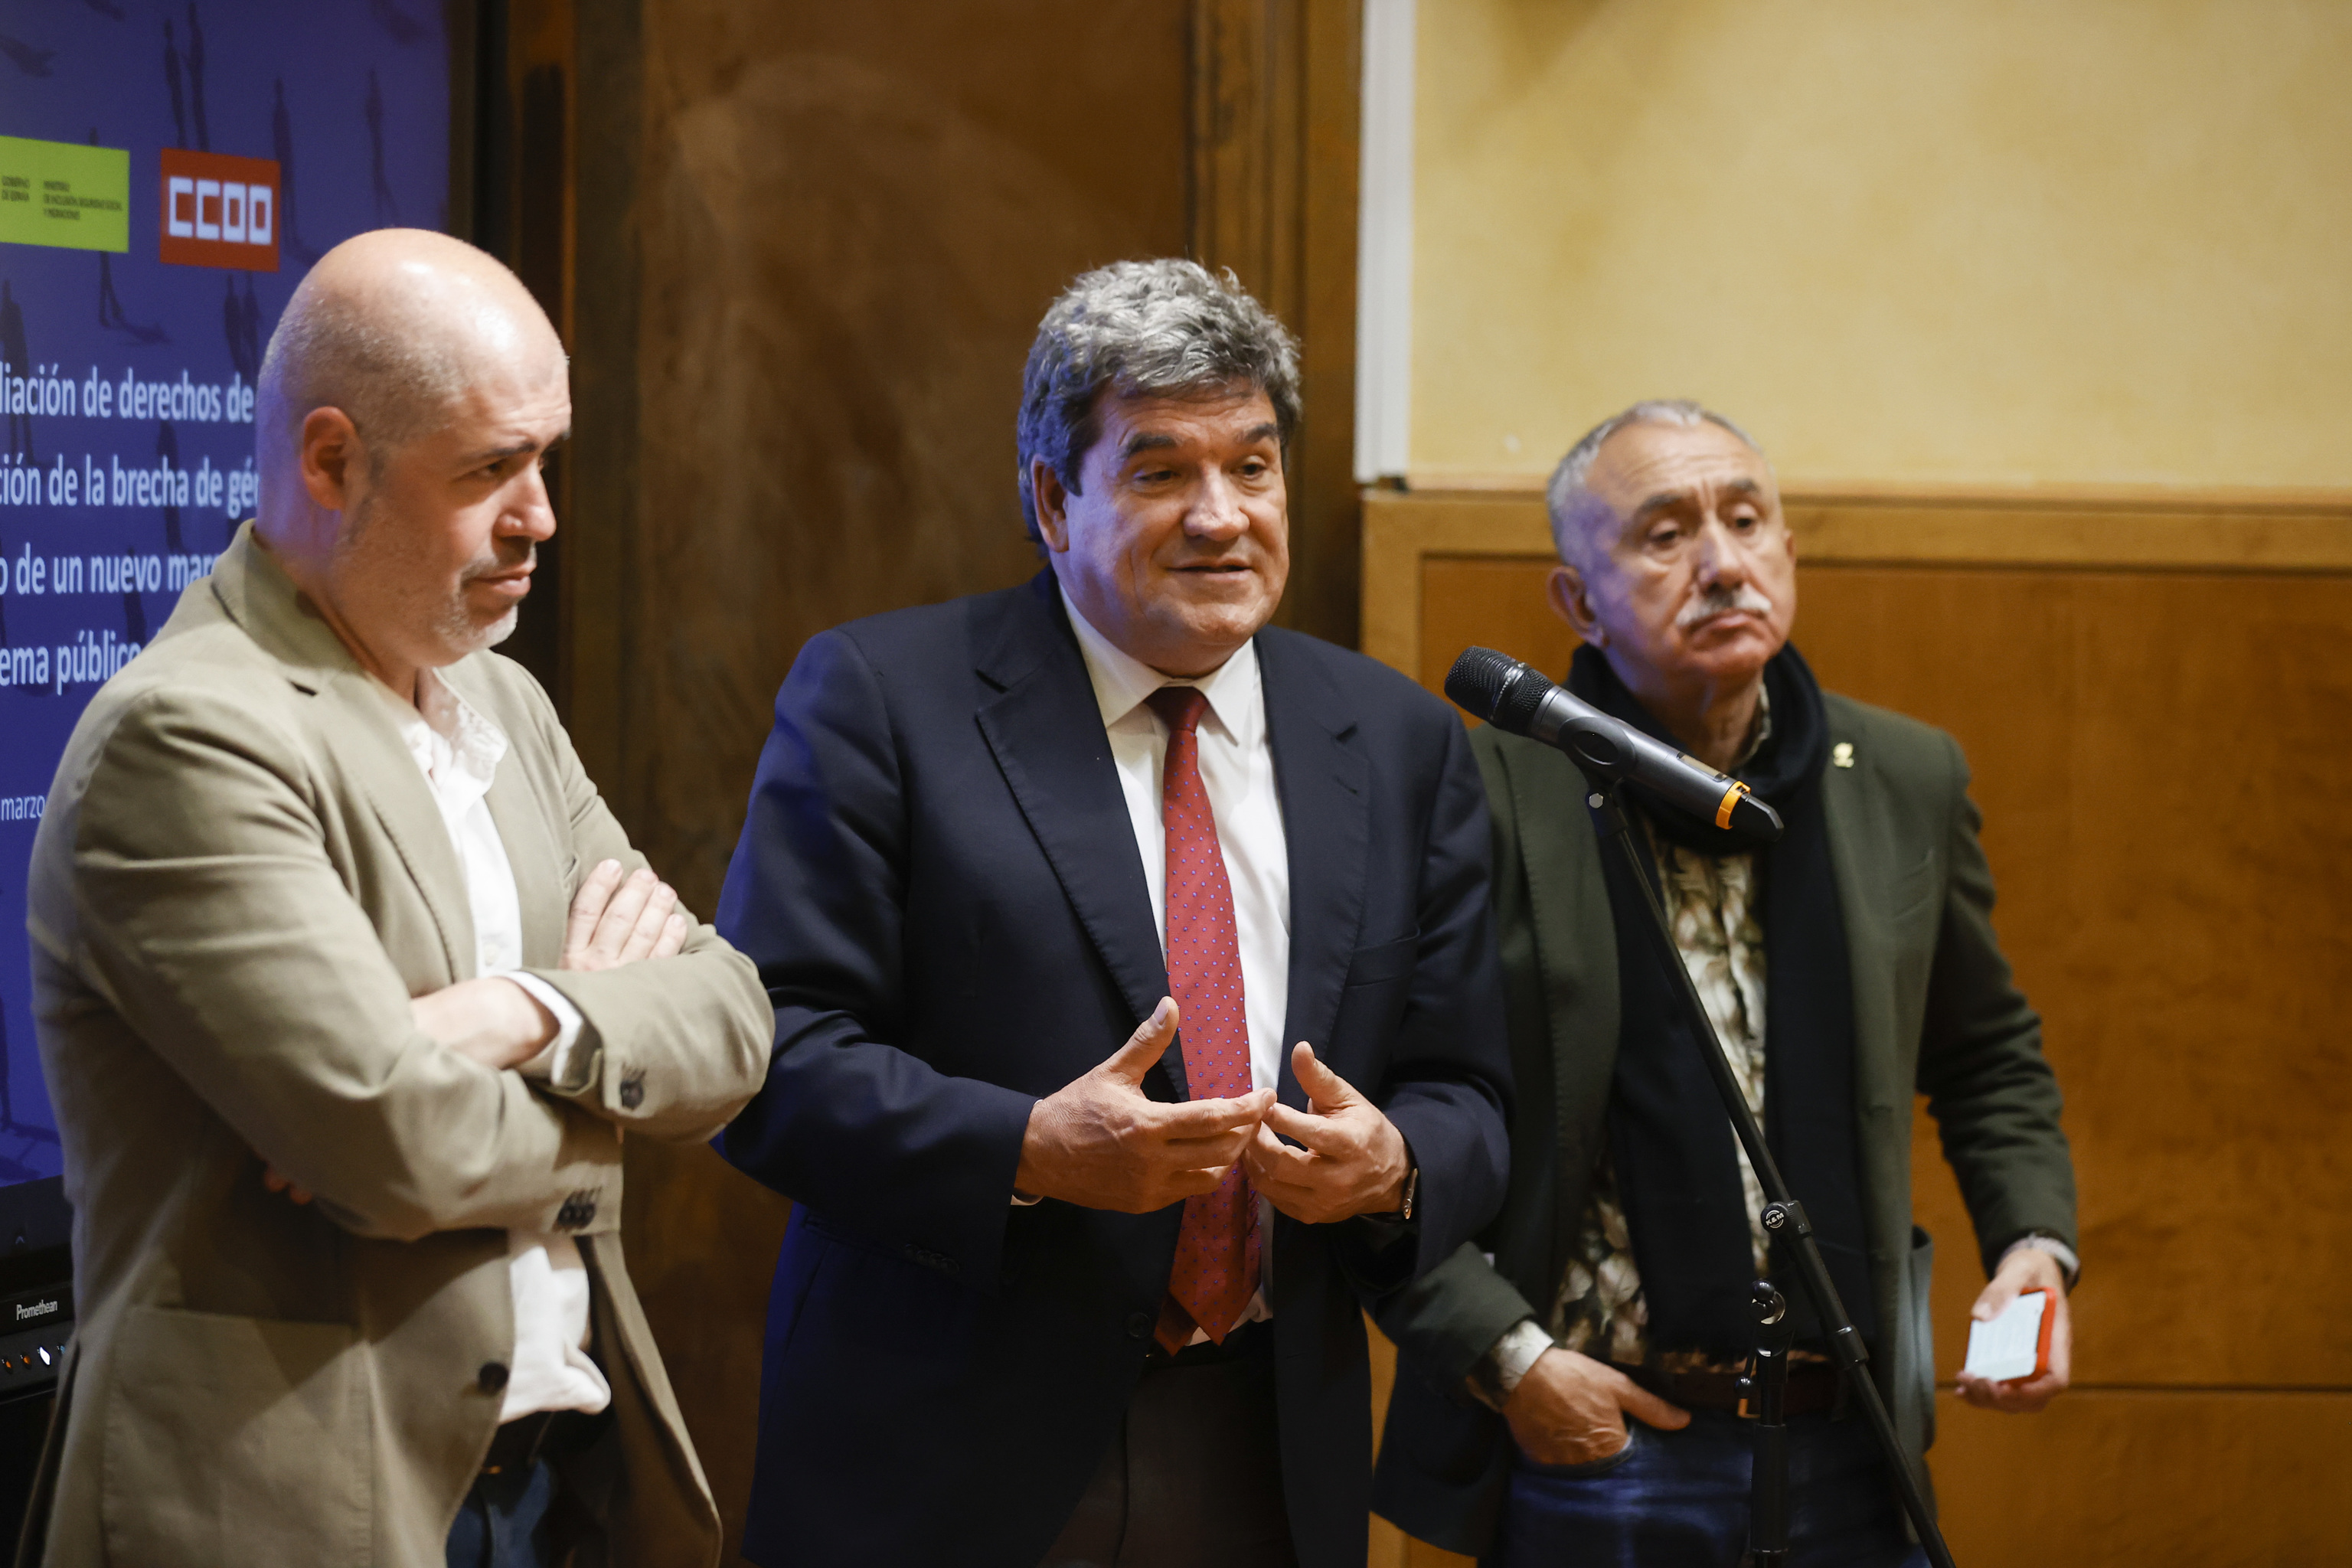 Unai Sordo, secretario general de CCOO; José Luis Escrivá, ministro de Seguridad Social, y Pepe Álvarez, secretario general de UGT).